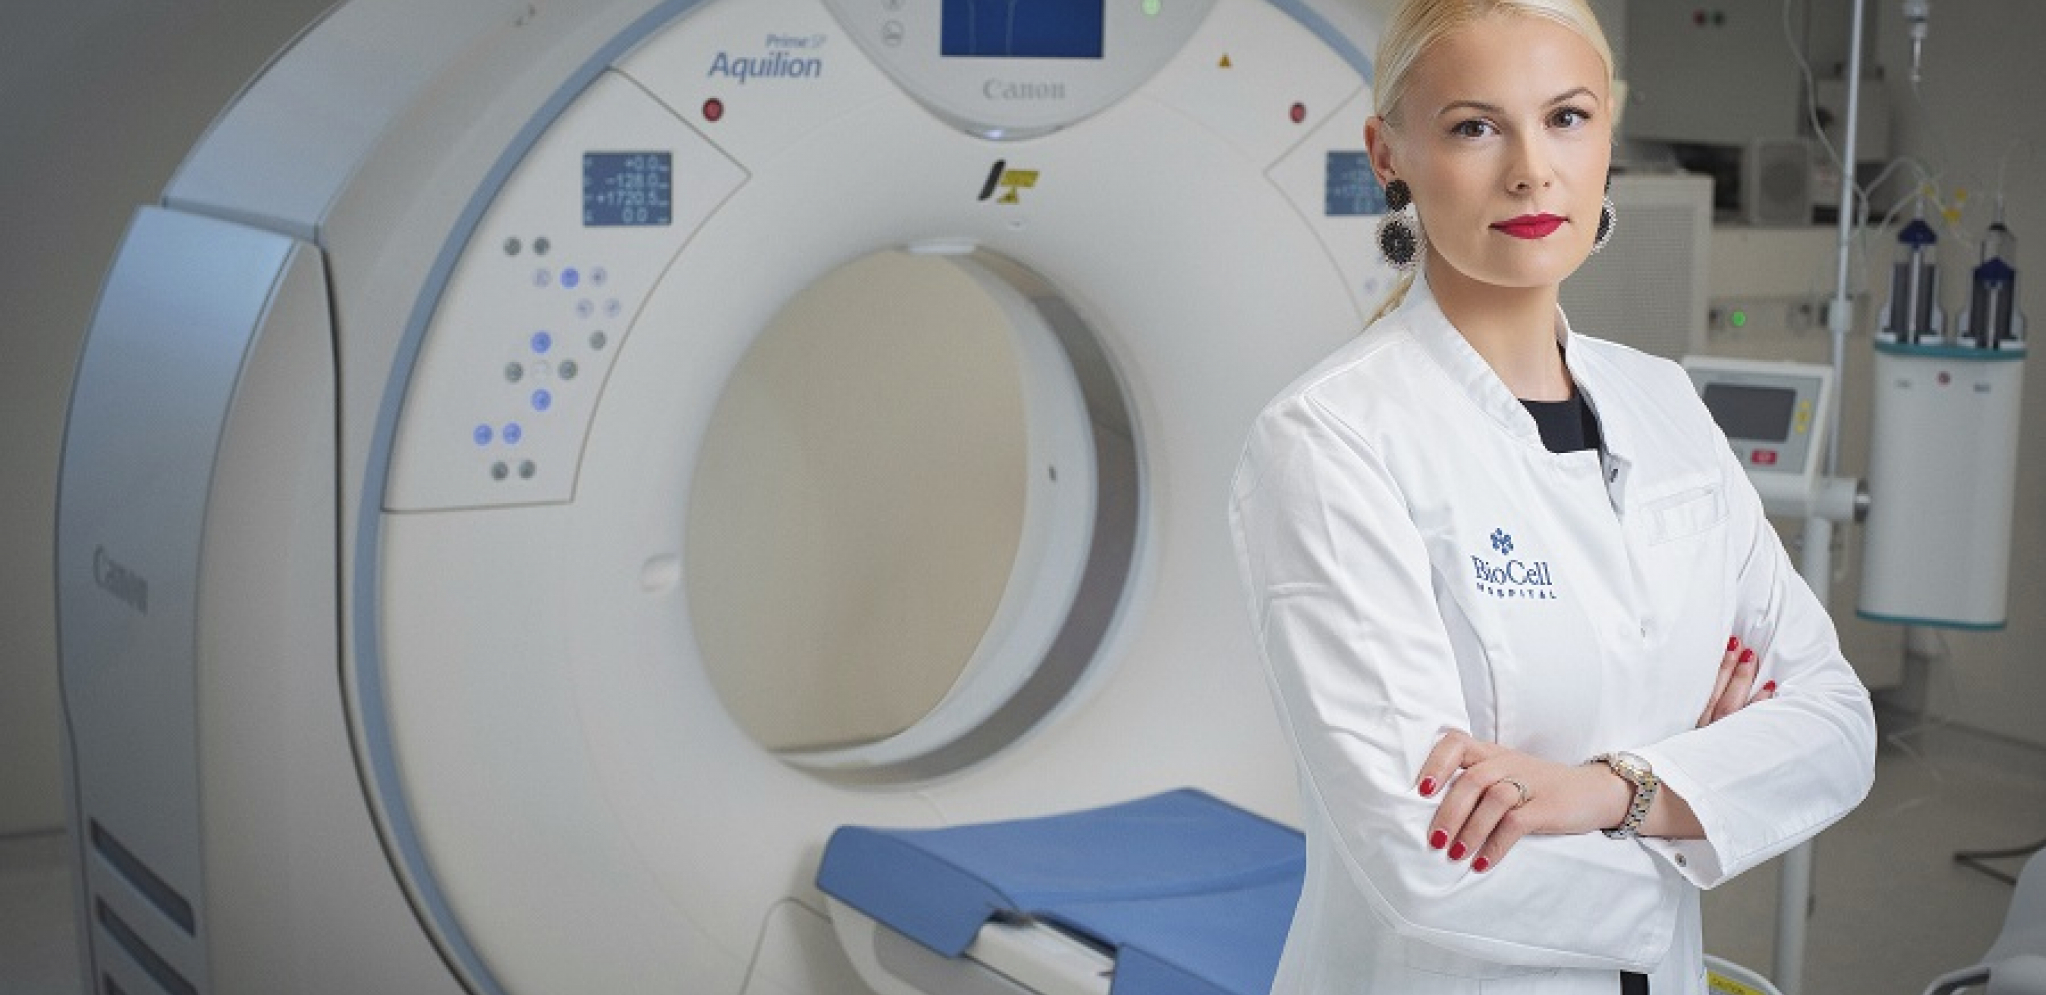 Zašto je važna radiologija: Intervju sa dr Milicom Đurđić, načelnicom radiologije u bolnici BIOCELL HOSPITAL